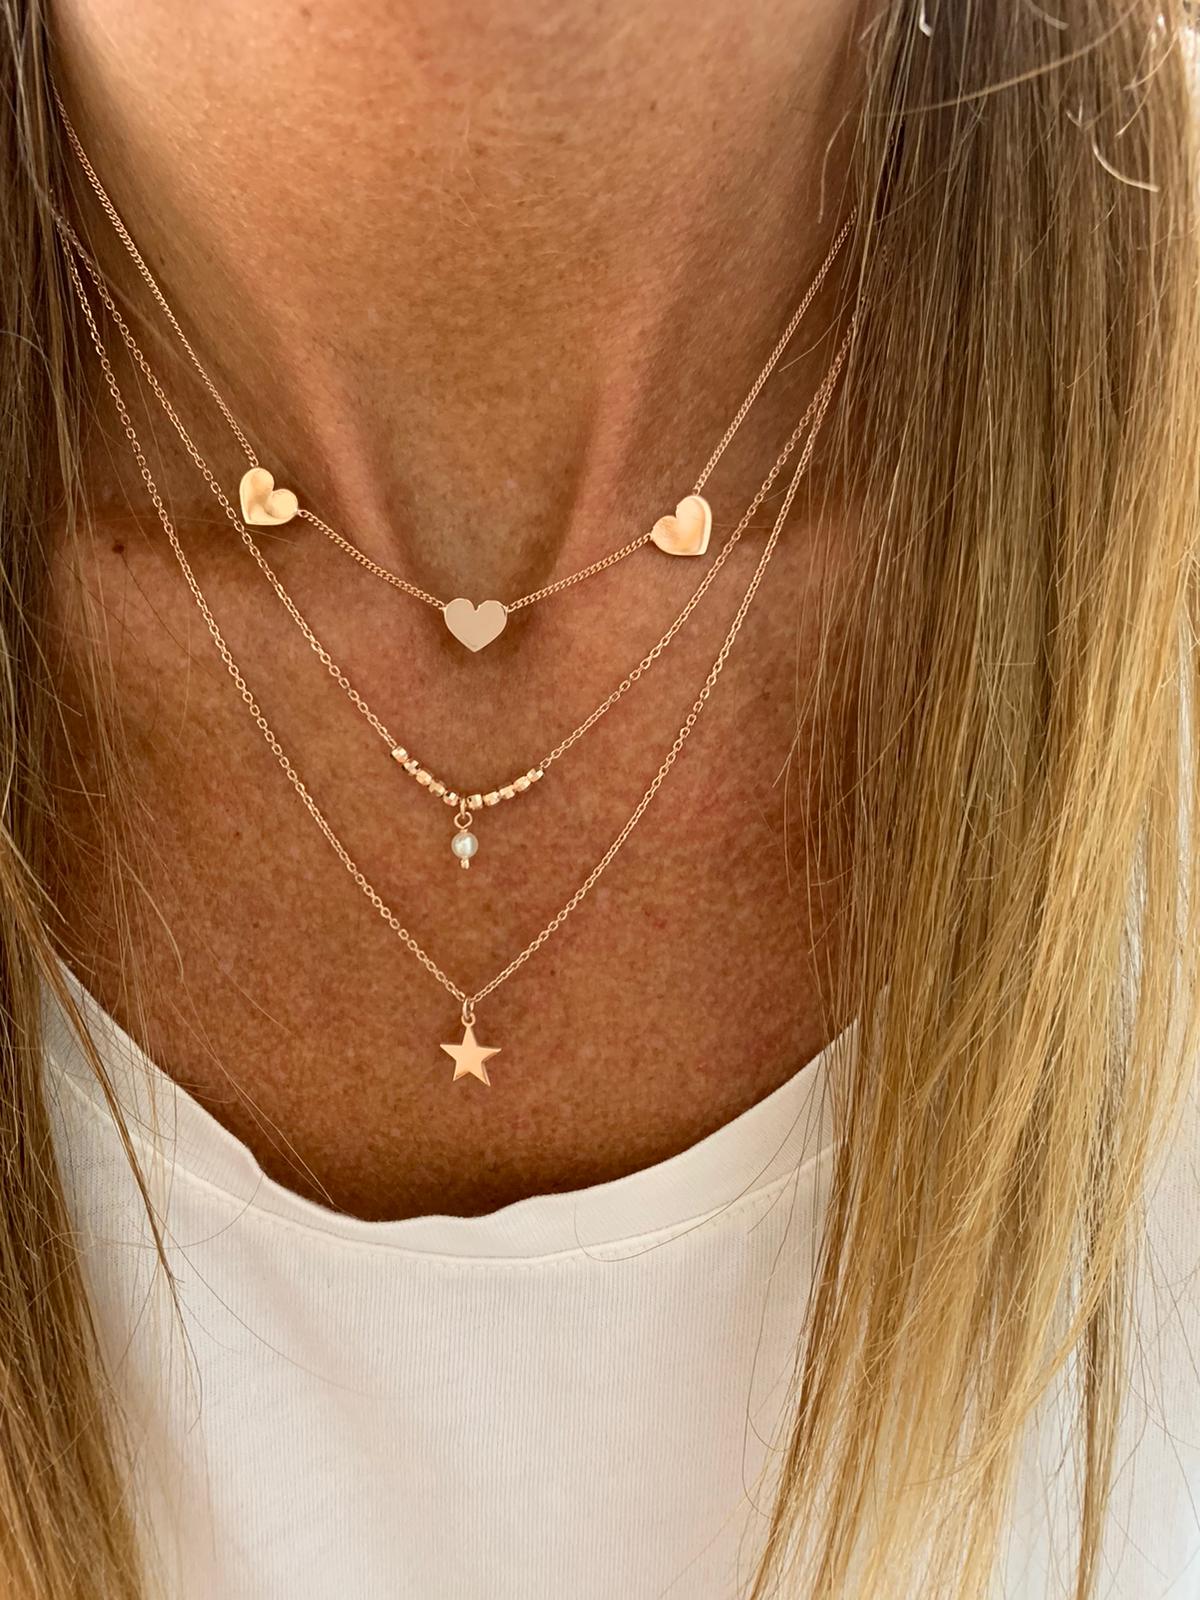 Unica collana a due fili con pepite diamantate rosé, una piccola perla da 0,4 mm pendente ed una stella da 0,8 mm pendente bagnata in oro rosé